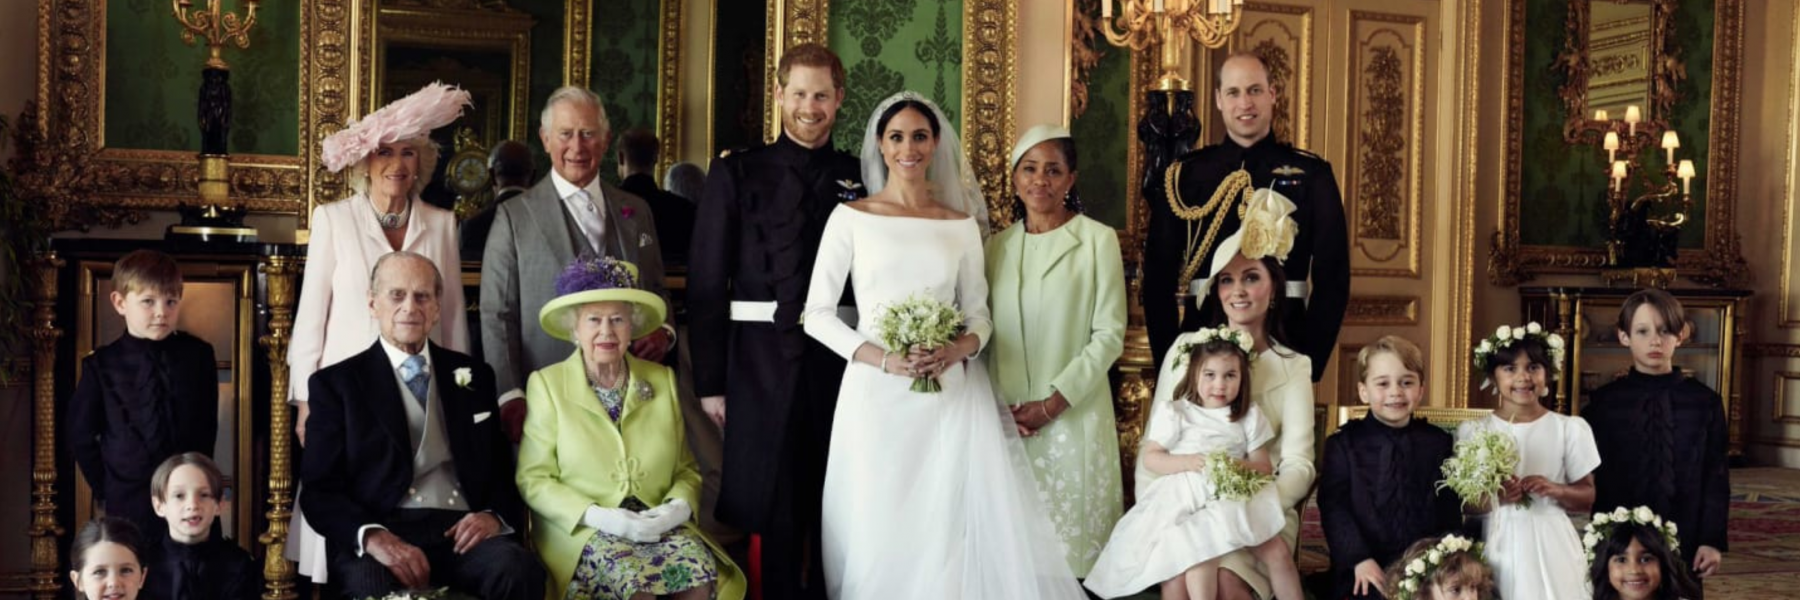 7 تقاليد للزواج في العائلة المالكة في بريطانيا